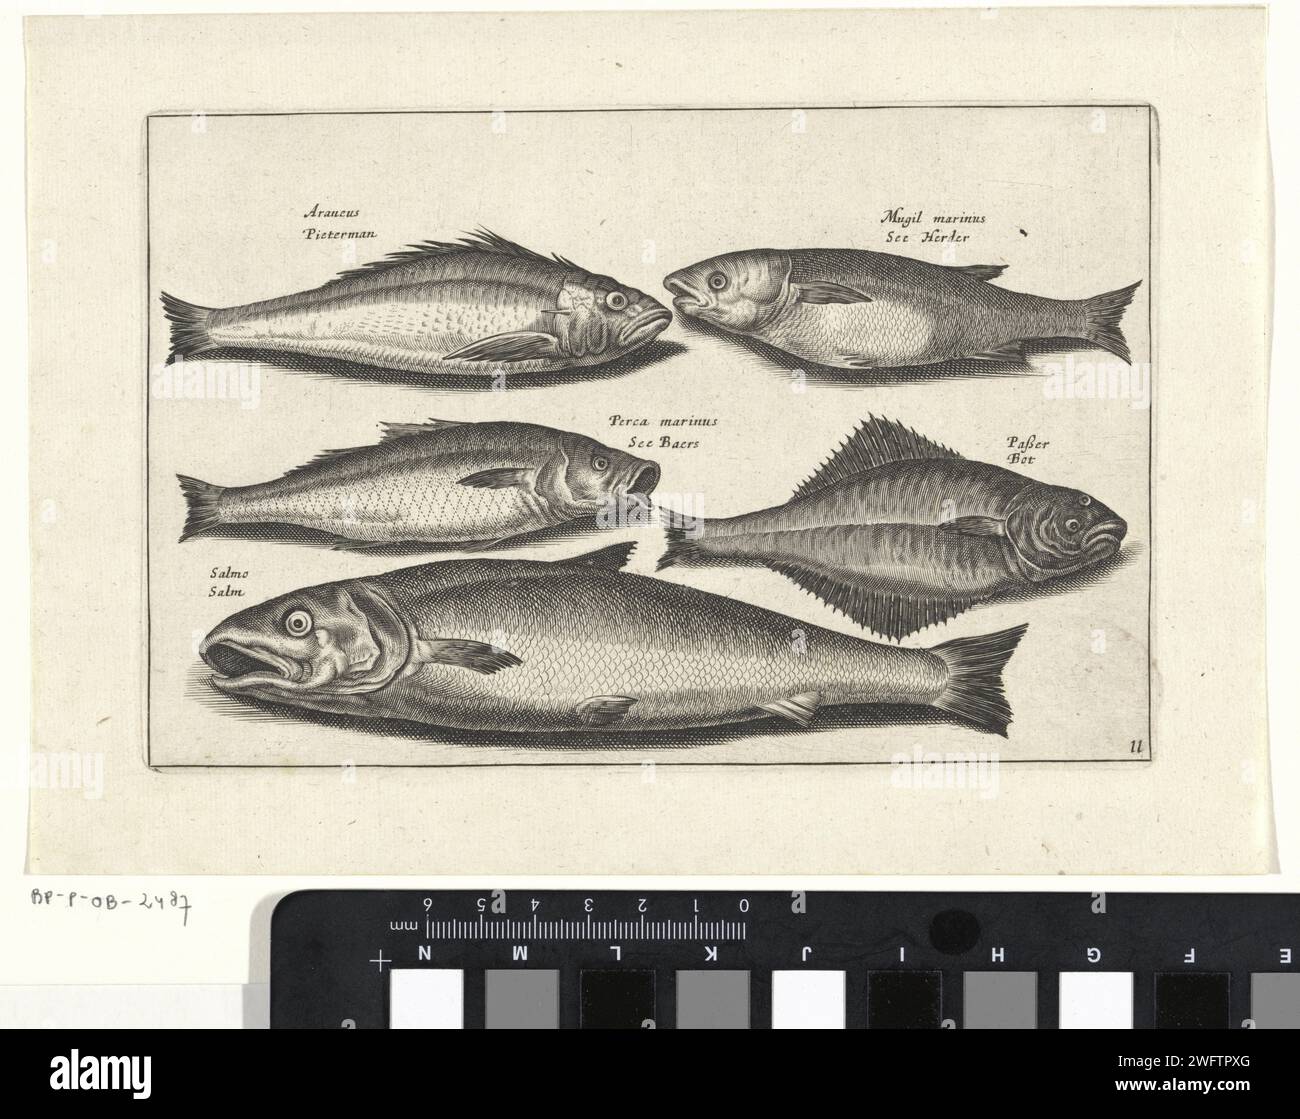 Saumon et quatre autres poissons, Anonyme, d'après Adriaen Collaert, 1634 imprimez un os, un bar, un saumon et trois autres poissons. Chaque poisson est équipé de son nom. L'impression fait partie d'une série avec le poisson comme sujet. Amsterdam papier gravure / gravure de poissons. poissons osseux : saumon Banque D'Images